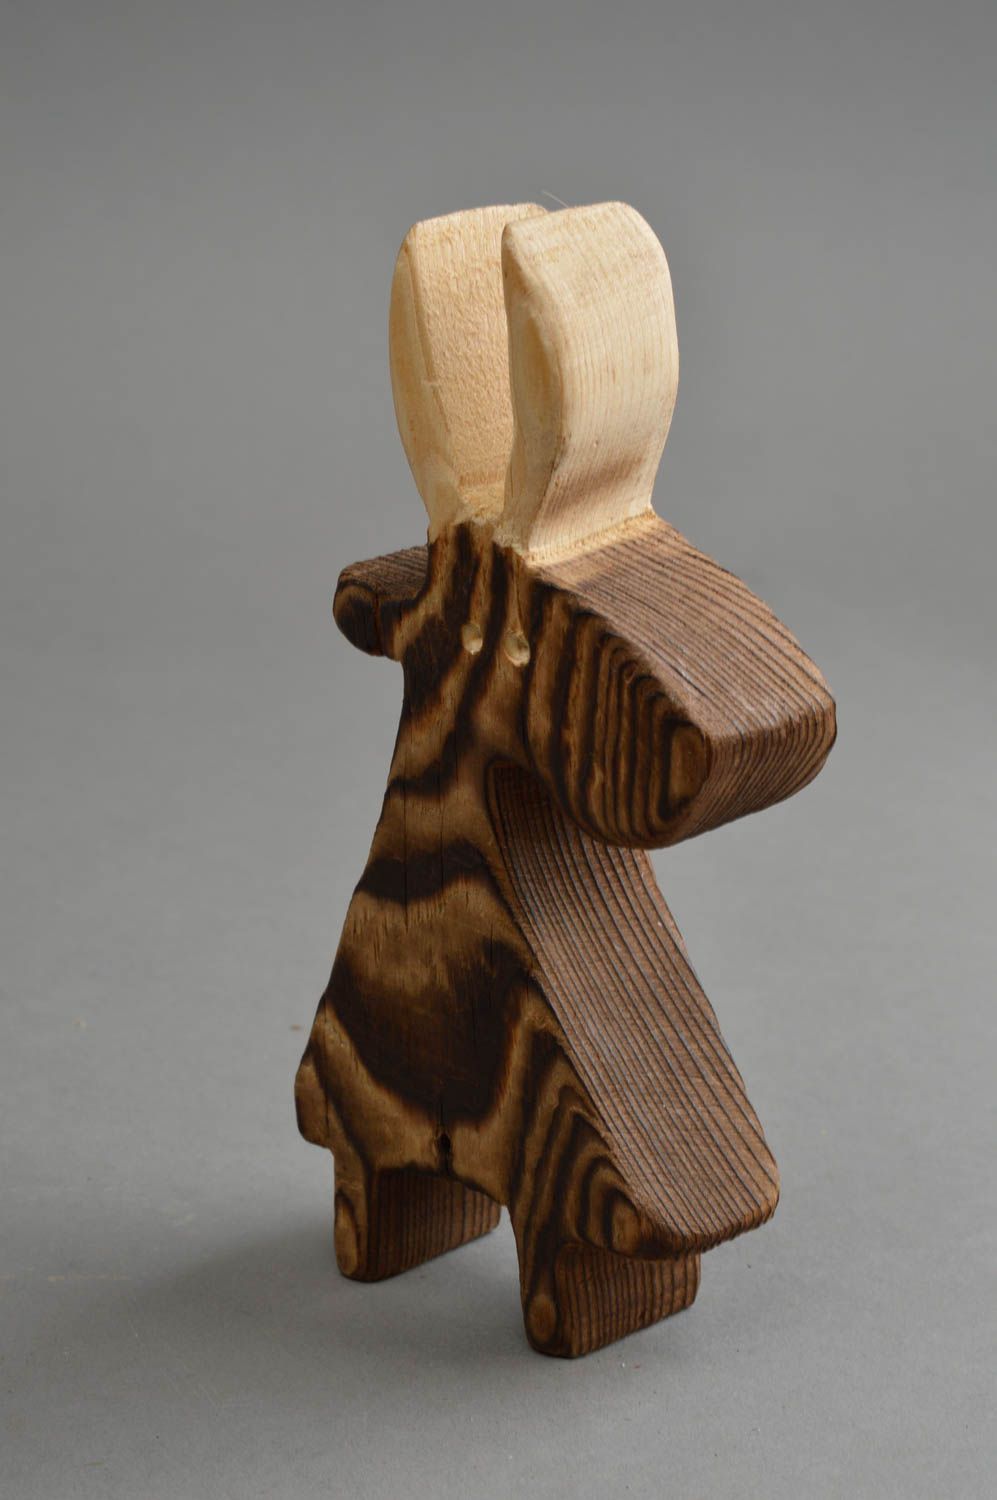 Figura decorativa hecha a mano de madera regalo original para decorar casa foto 3